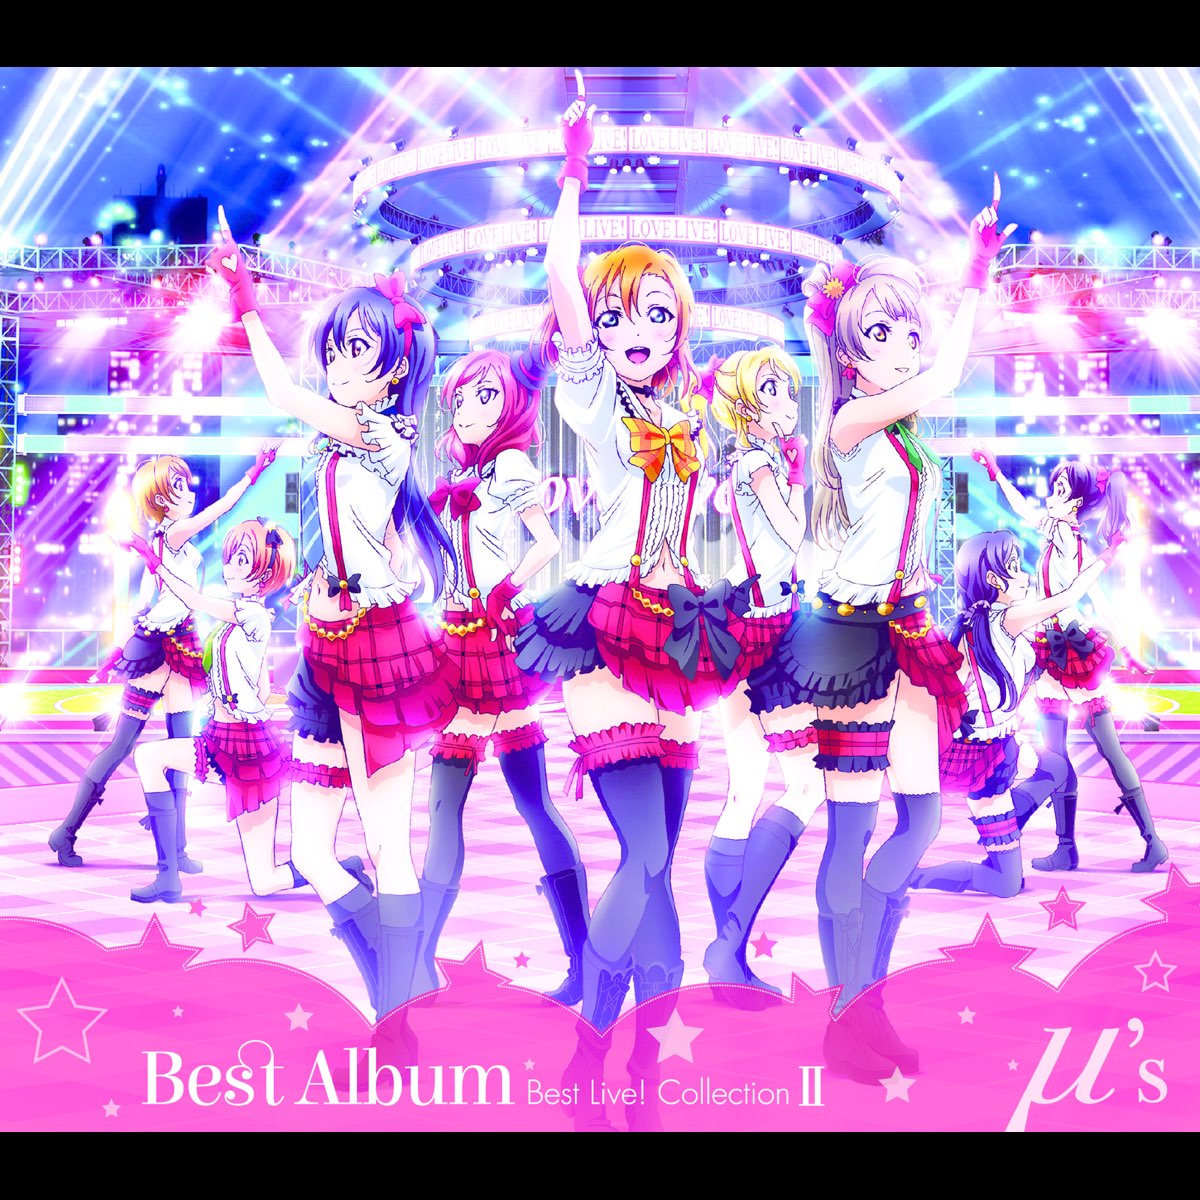 μ's Best Album Best Live! Collection Ⅱ” álbum de μ's en Apple Music